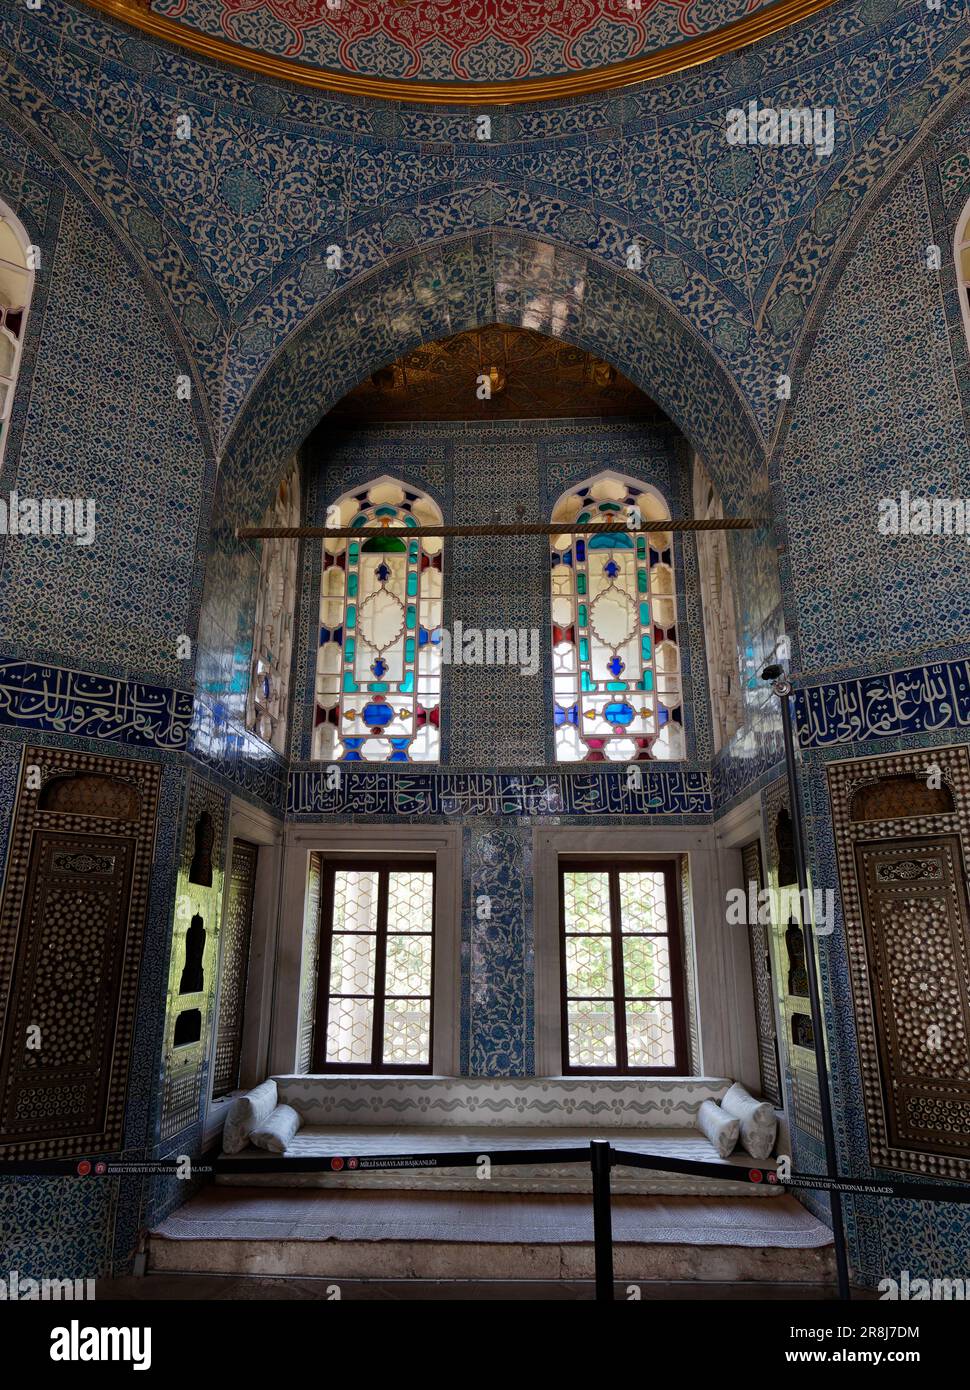 Elegante camera all'interno del Palazzo Topkapi con piastrelle blu e bianche, vetrate colorate, quartiere di Fatih, Istanbul, Turchia Foto Stock